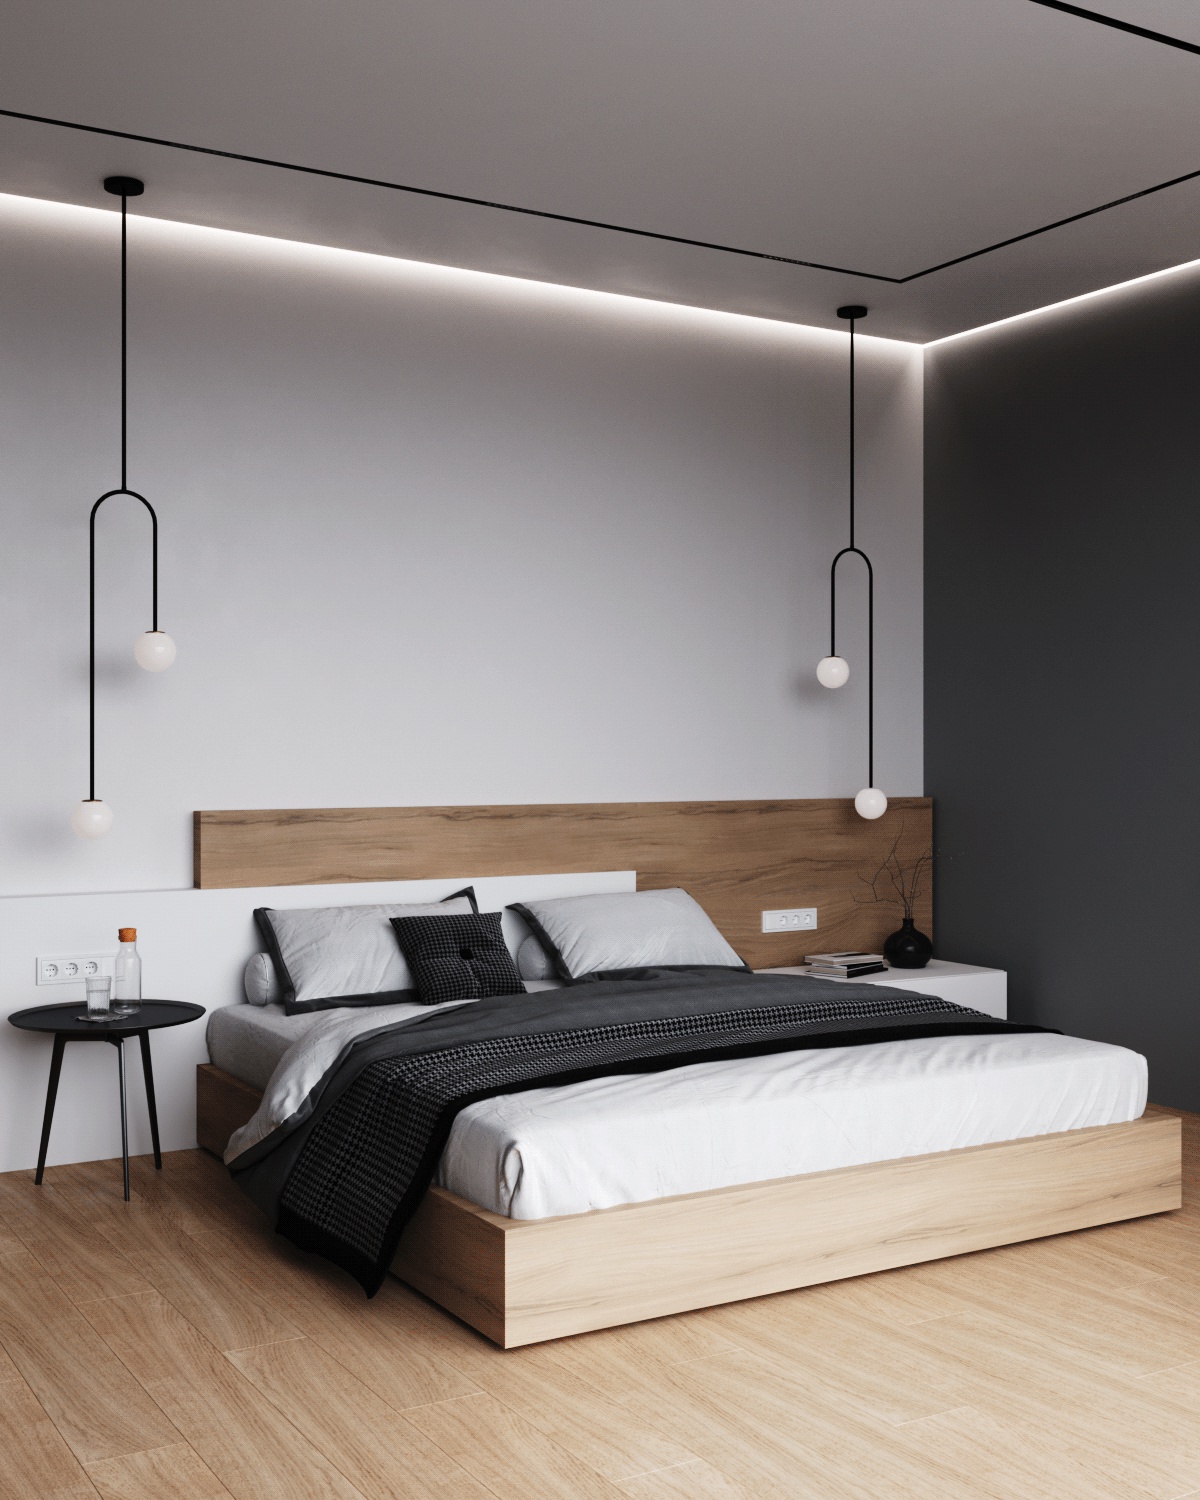 20+ Mẫu thiết kế nội thất phòng ngủ phong cách tối giản đẹp